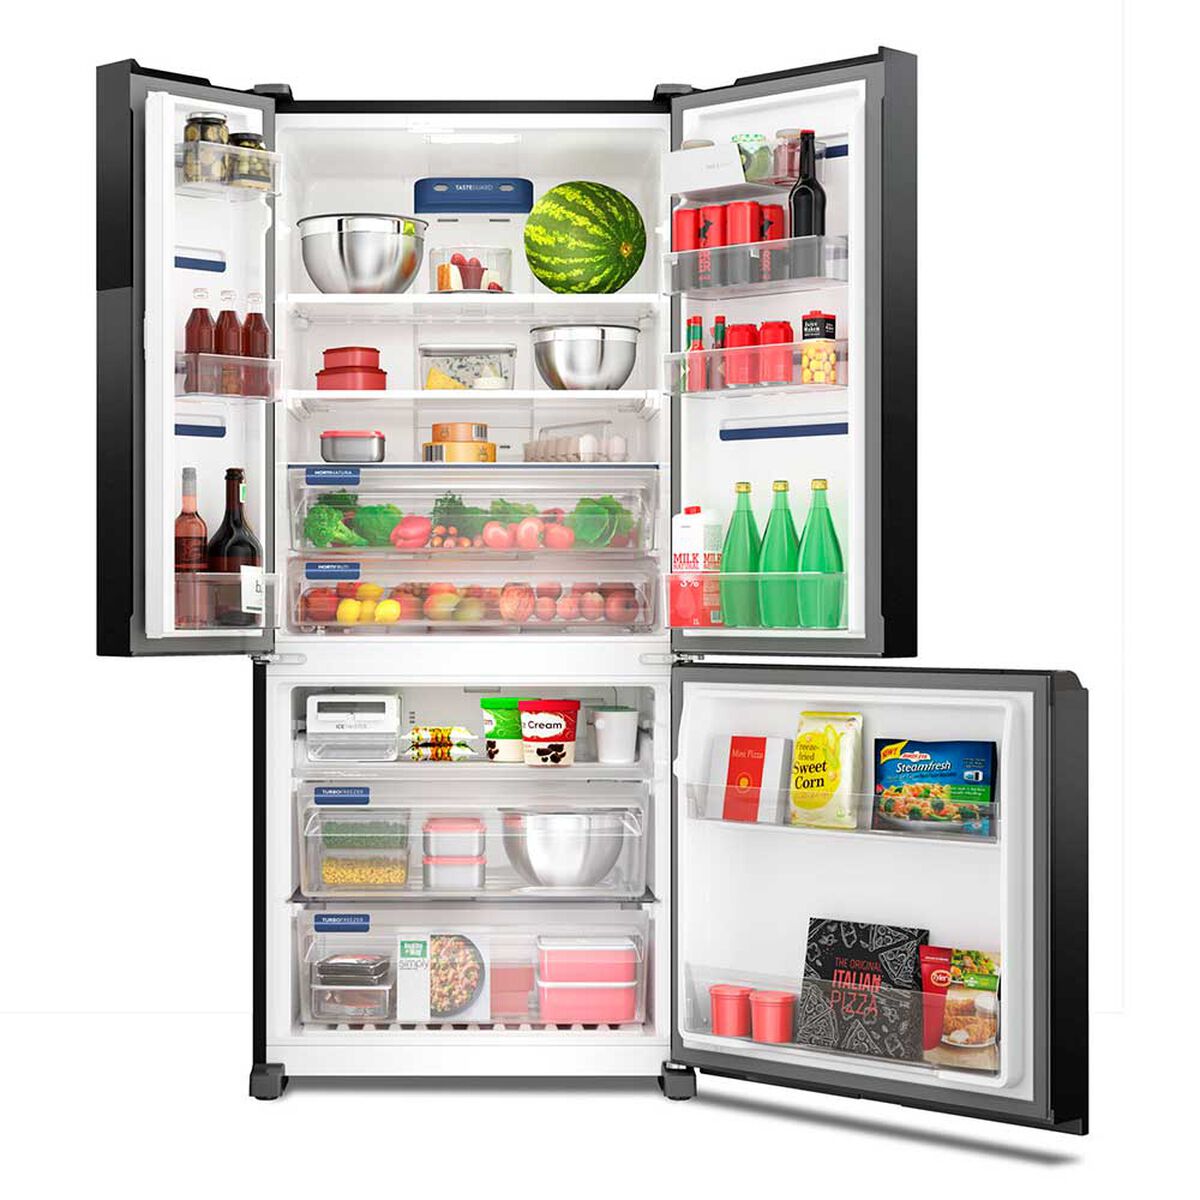 Refrigerador Side By Side Fensa IM8B 590 lts.